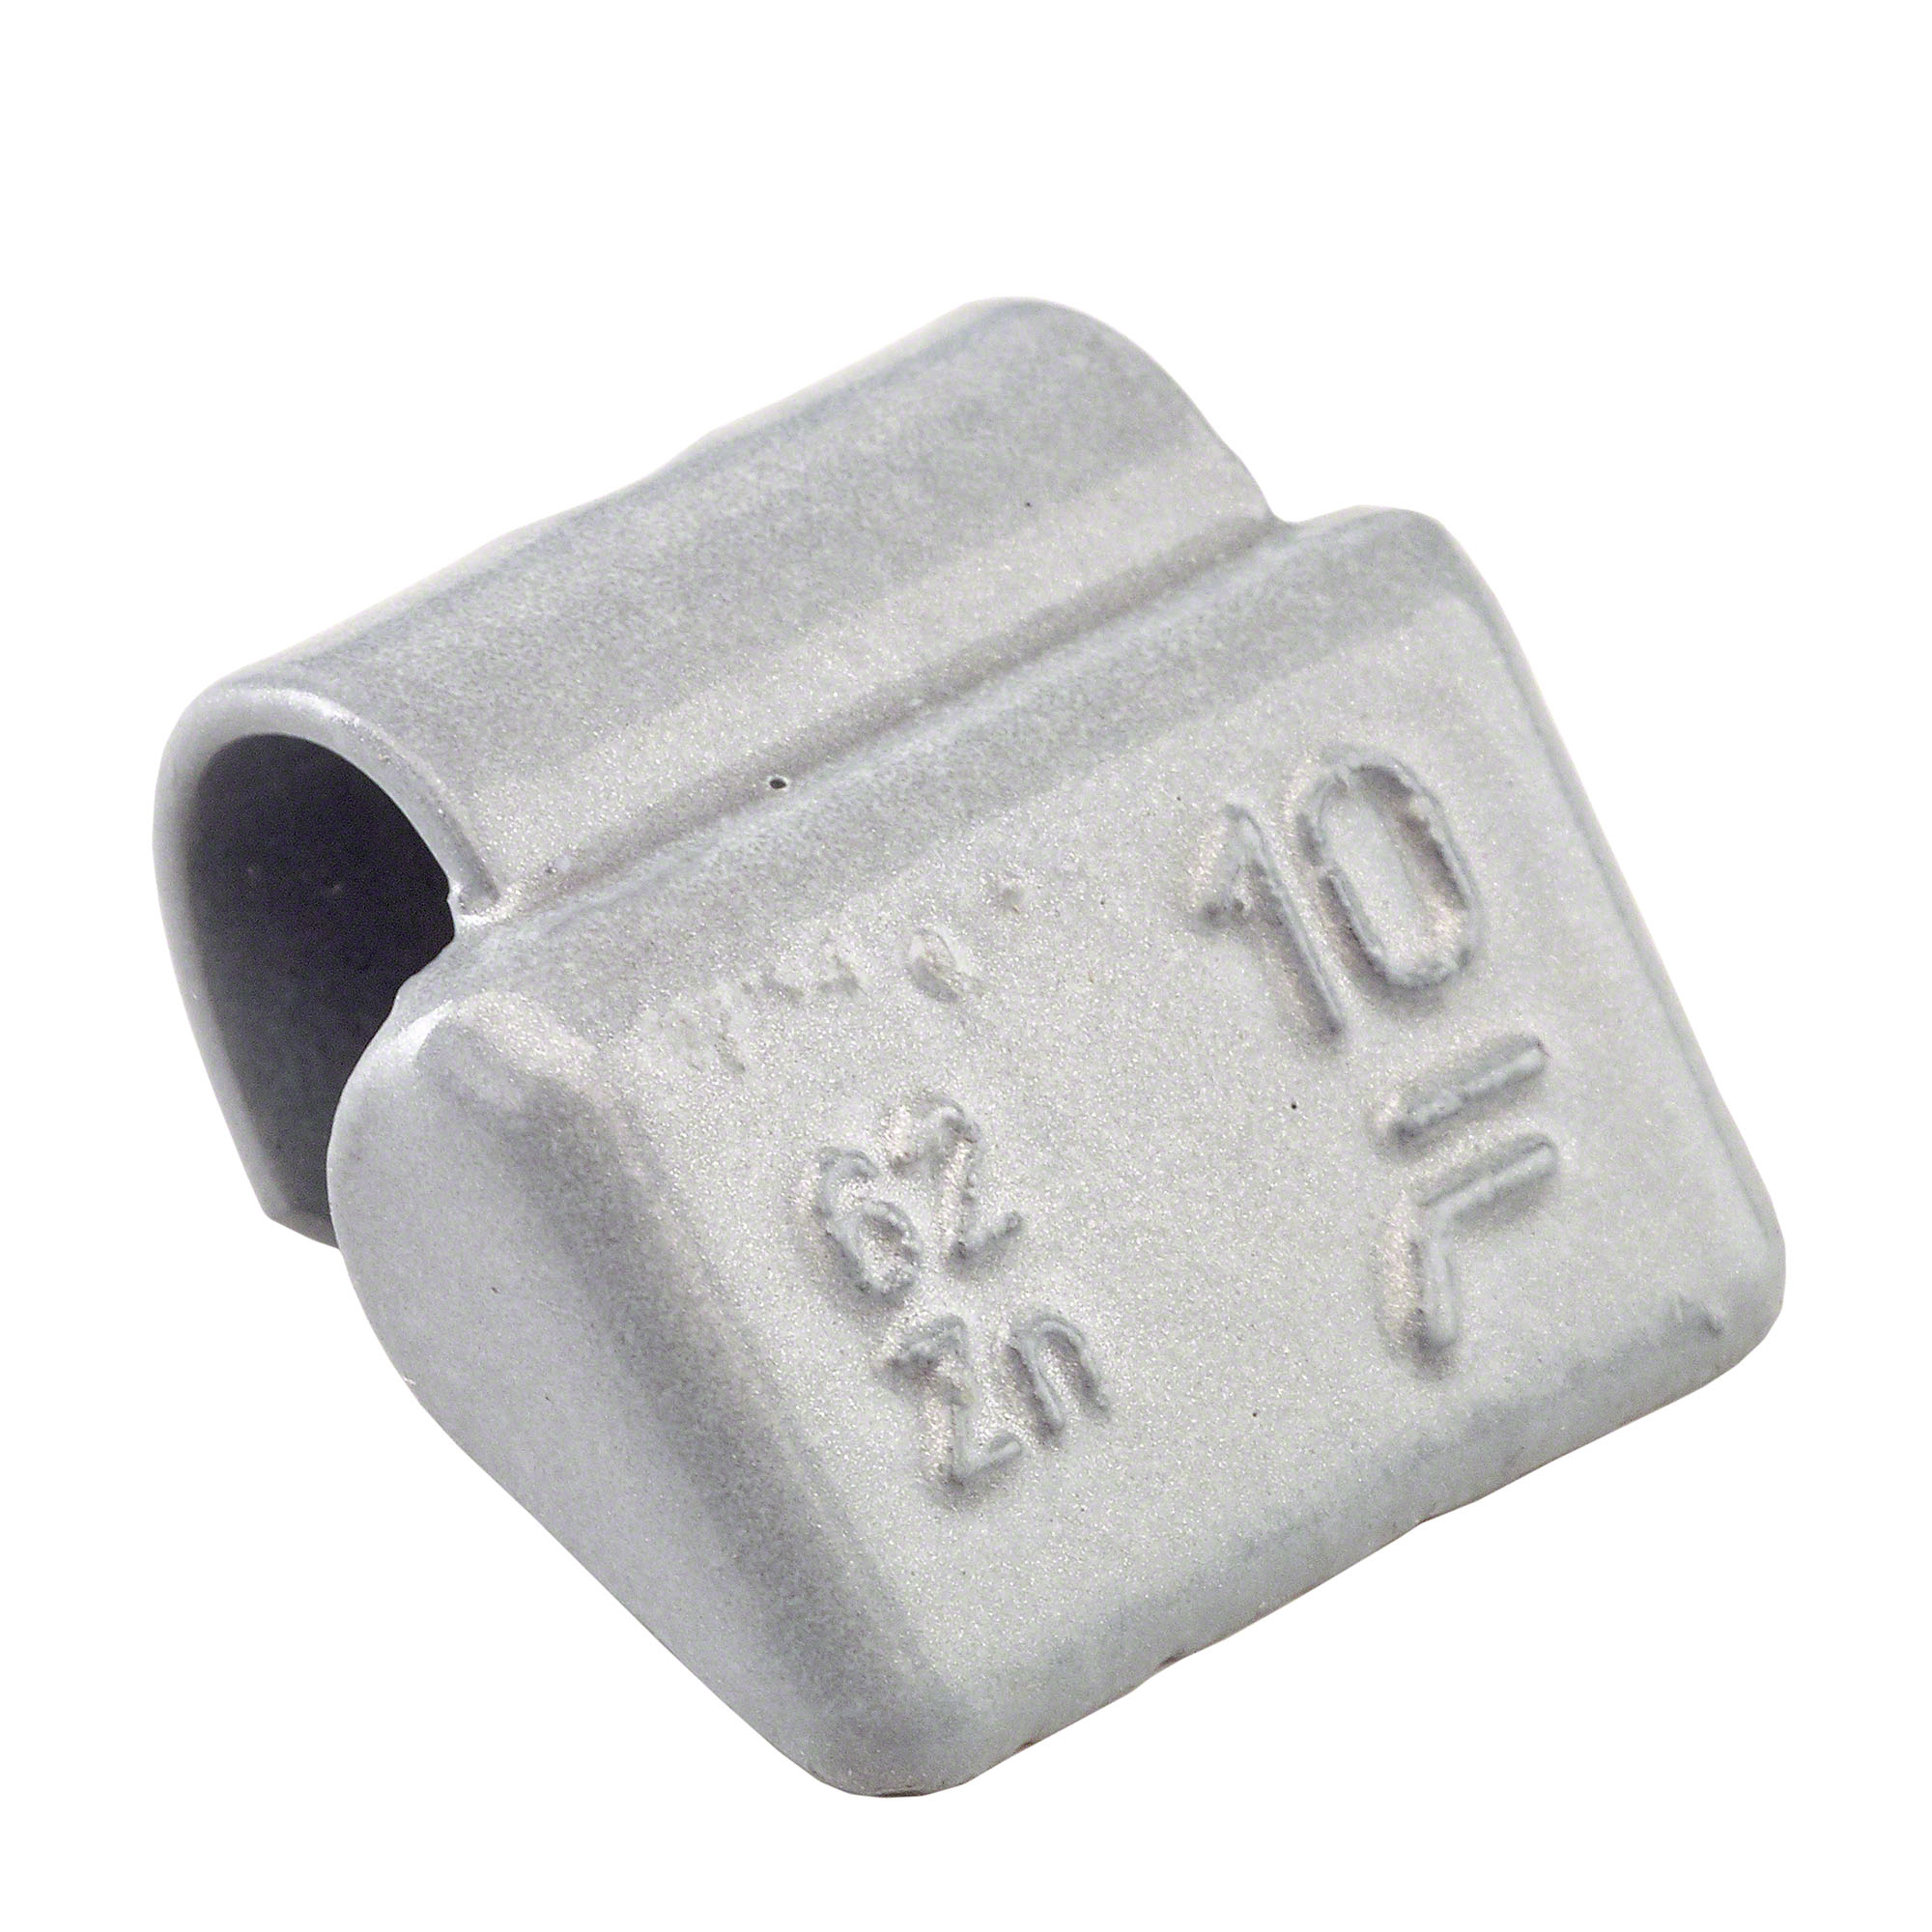 peso a molla - Typ 62, 10 g, zinco, argento